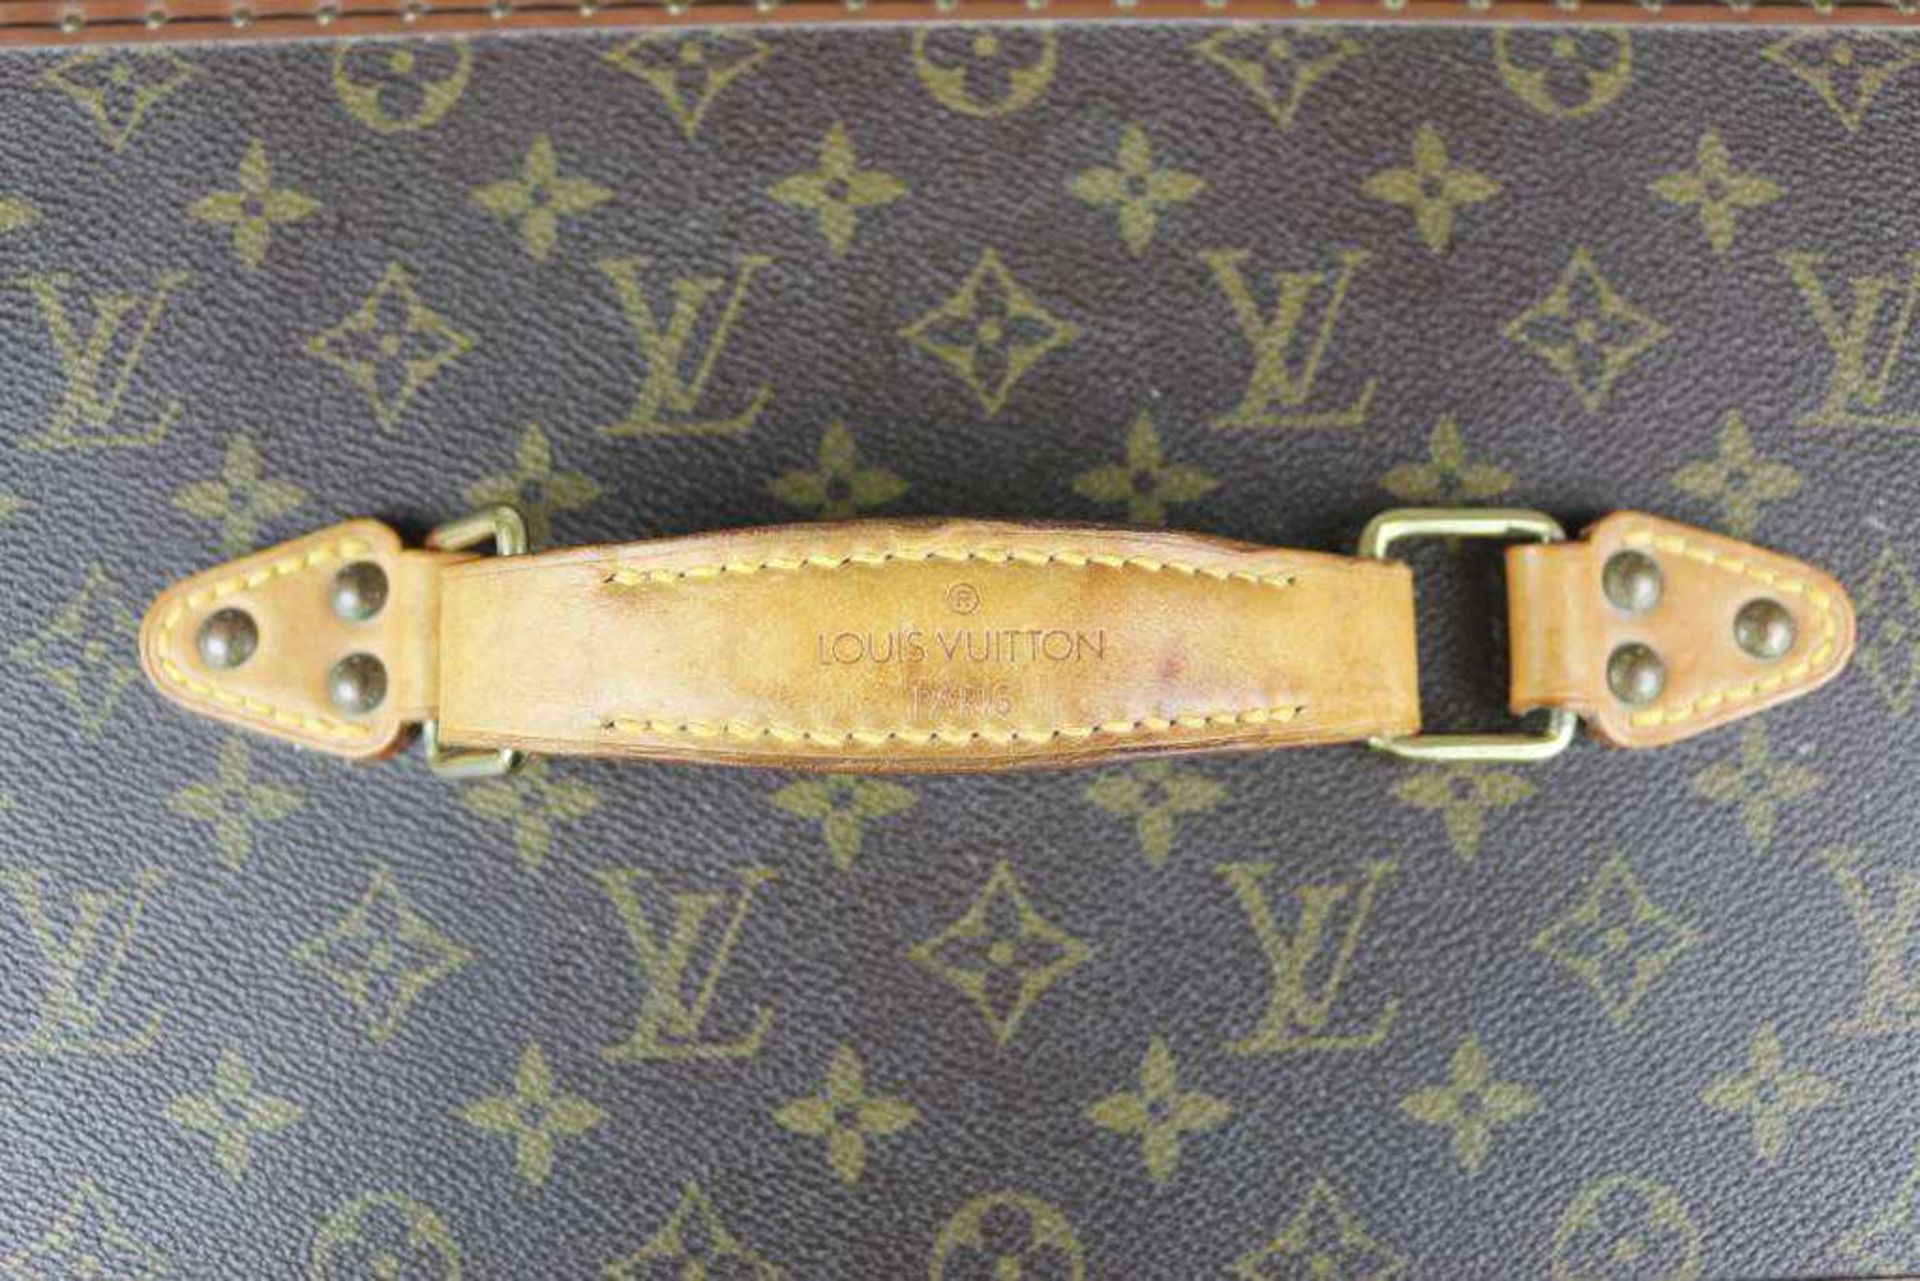 Louis Vuitton Beauty Case, Canvas mit LV Schriftzug, Messingbeschläge und Ledergriff. Innen mit - Bild 3 aus 4